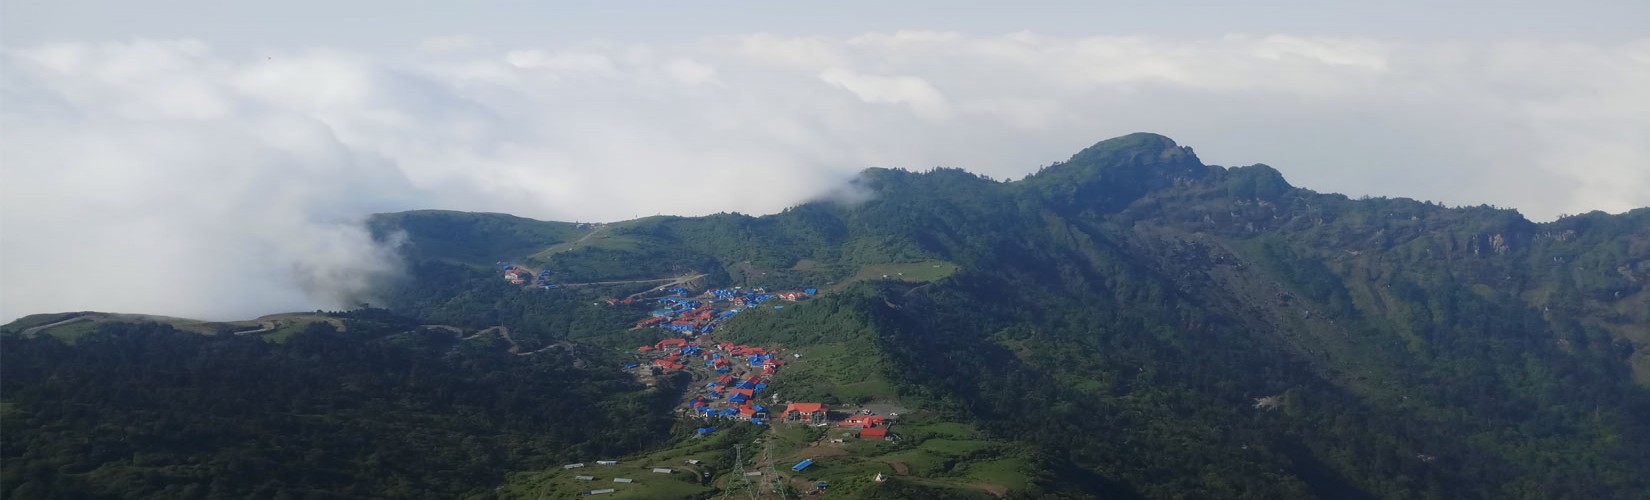 Kalinchowk Pilgrims Tour in Nepal